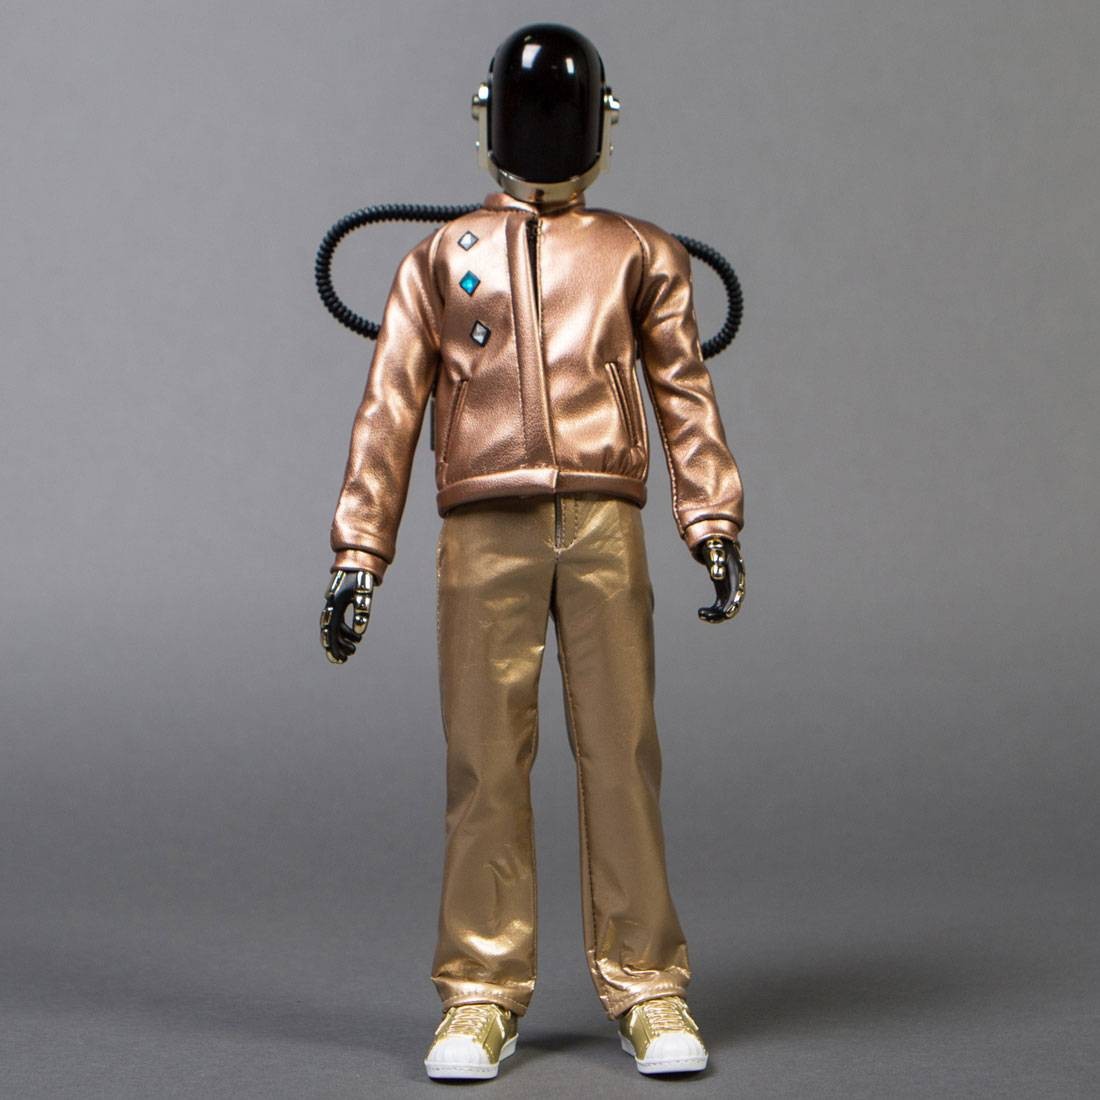 Medicom RAH Daft Punk Discovery Ver. 2.0 - Guy Manuel de Homem Christo Figure (bronze / gold)